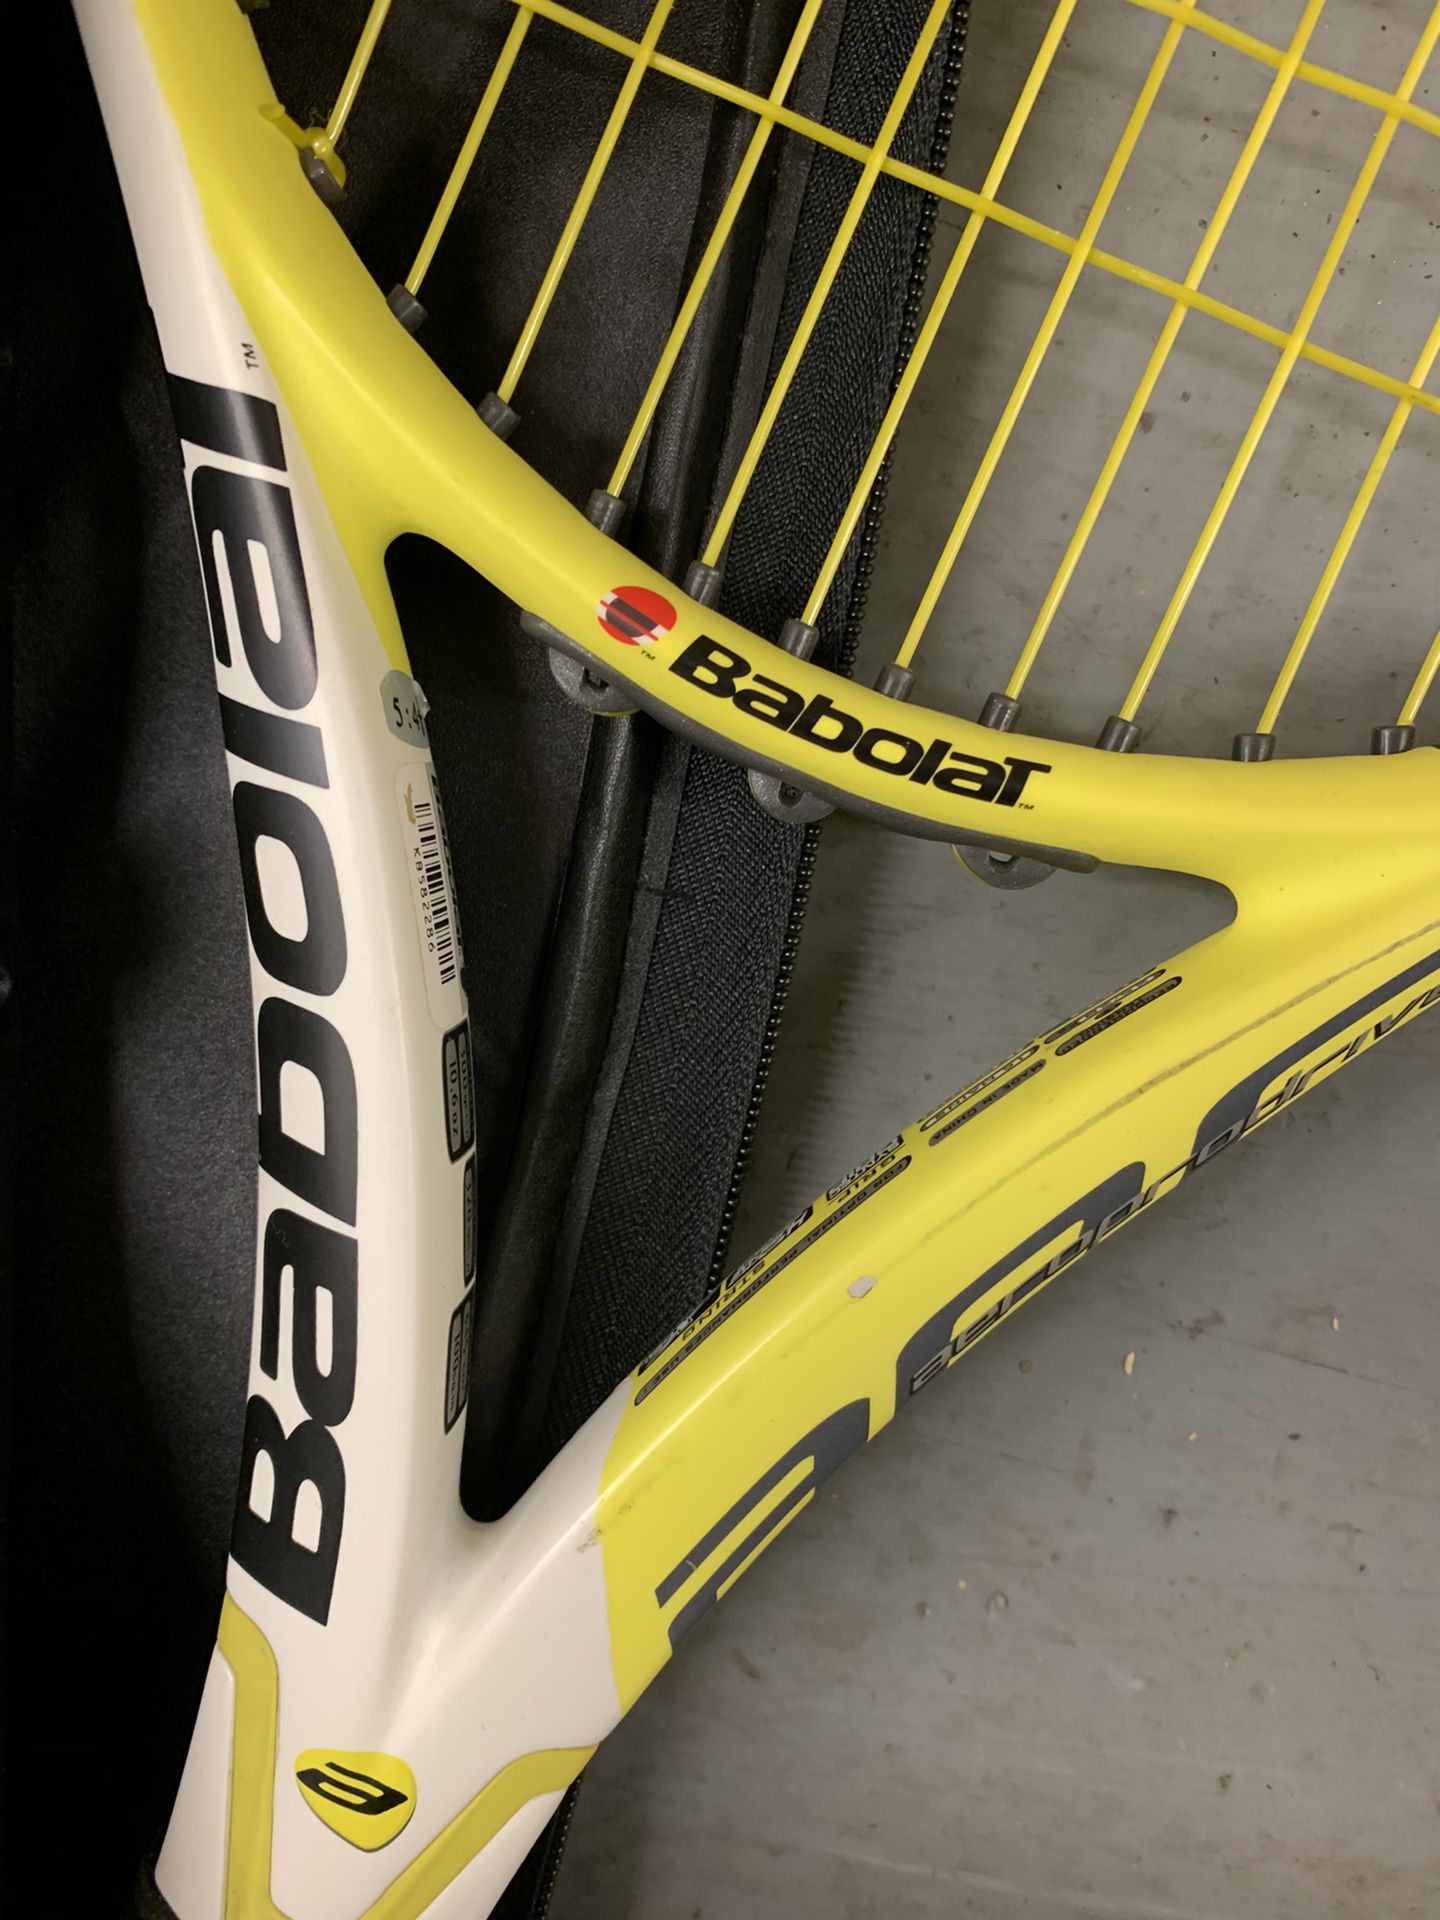 Tennis rackets brand new